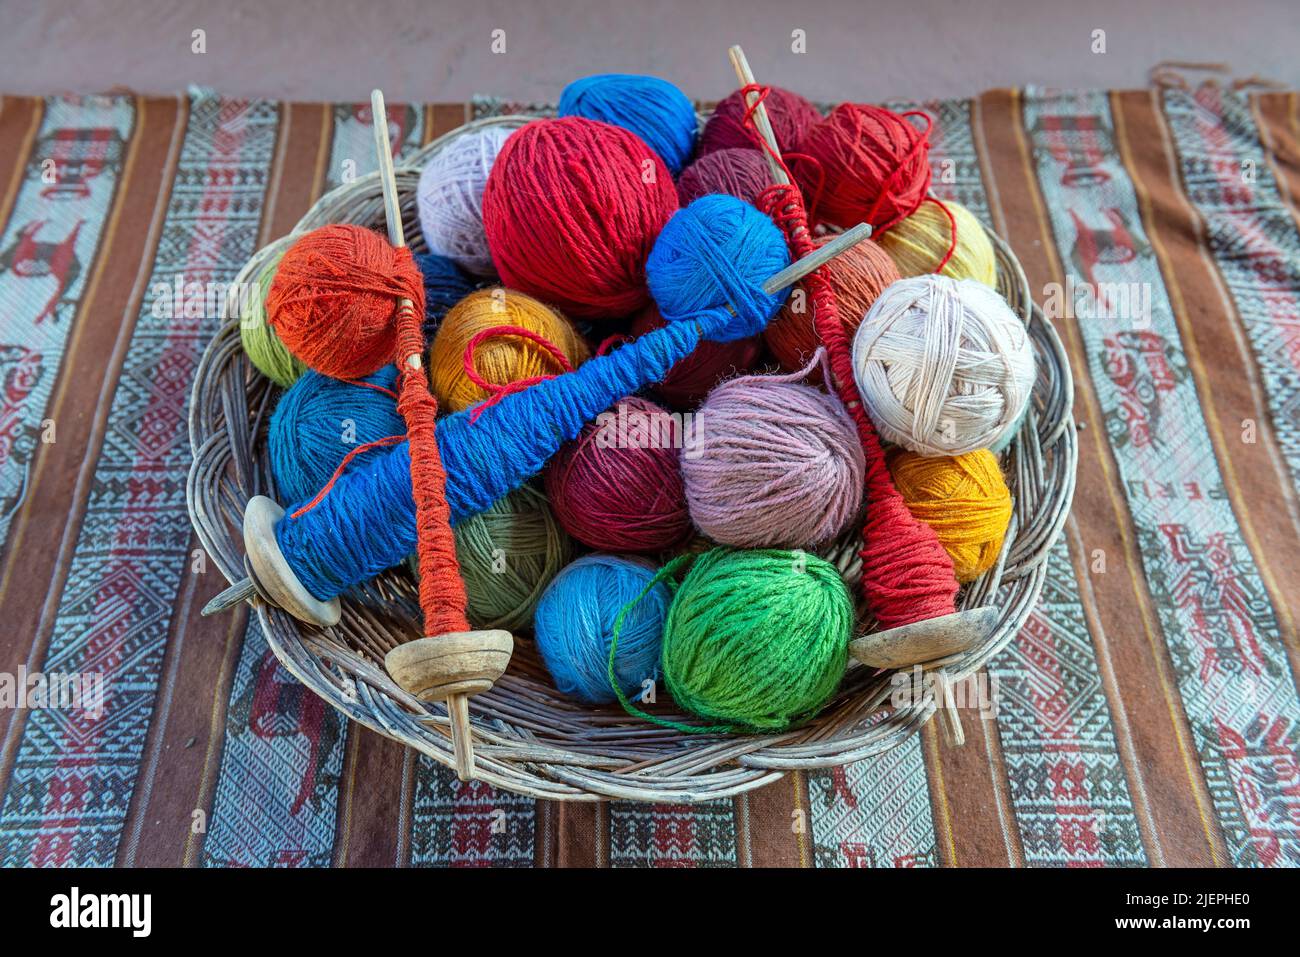 Vue de dessus d'un panier avec des balles de laine d'alpaga et des broches tournantes dans un centre de production textile à Cusco, Pérou. Banque D'Images